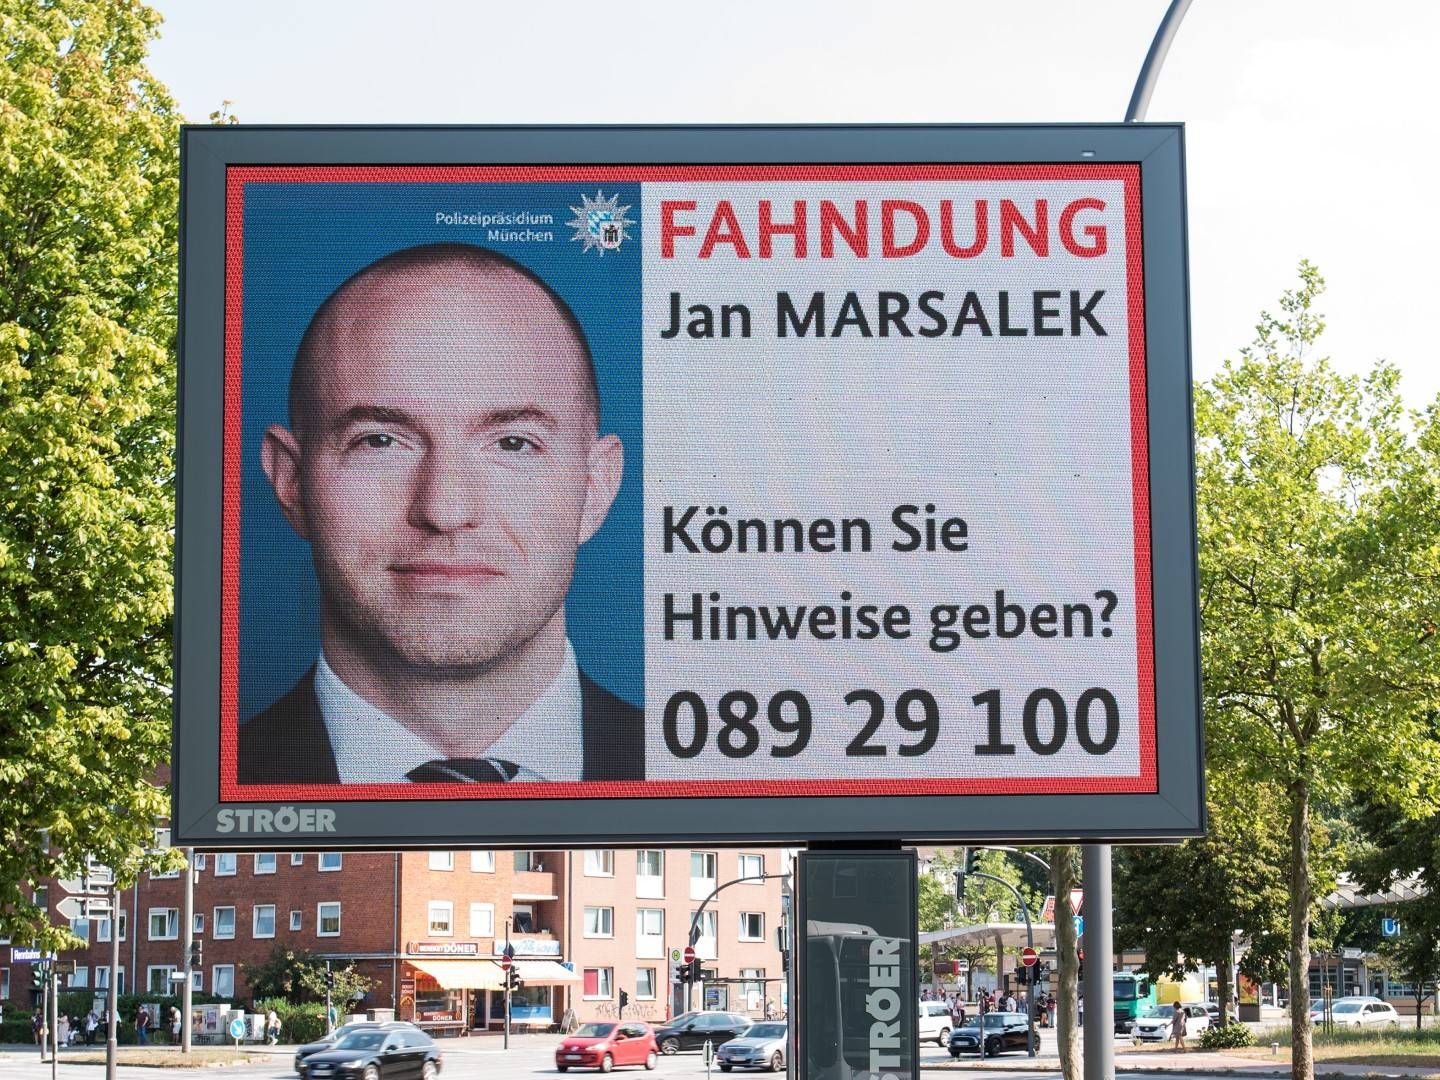 Fahndungsaufruf nach Jan Marsalek, Ex-COO von Wirecard, auf einer Leuchtreklame | Foto: dpa